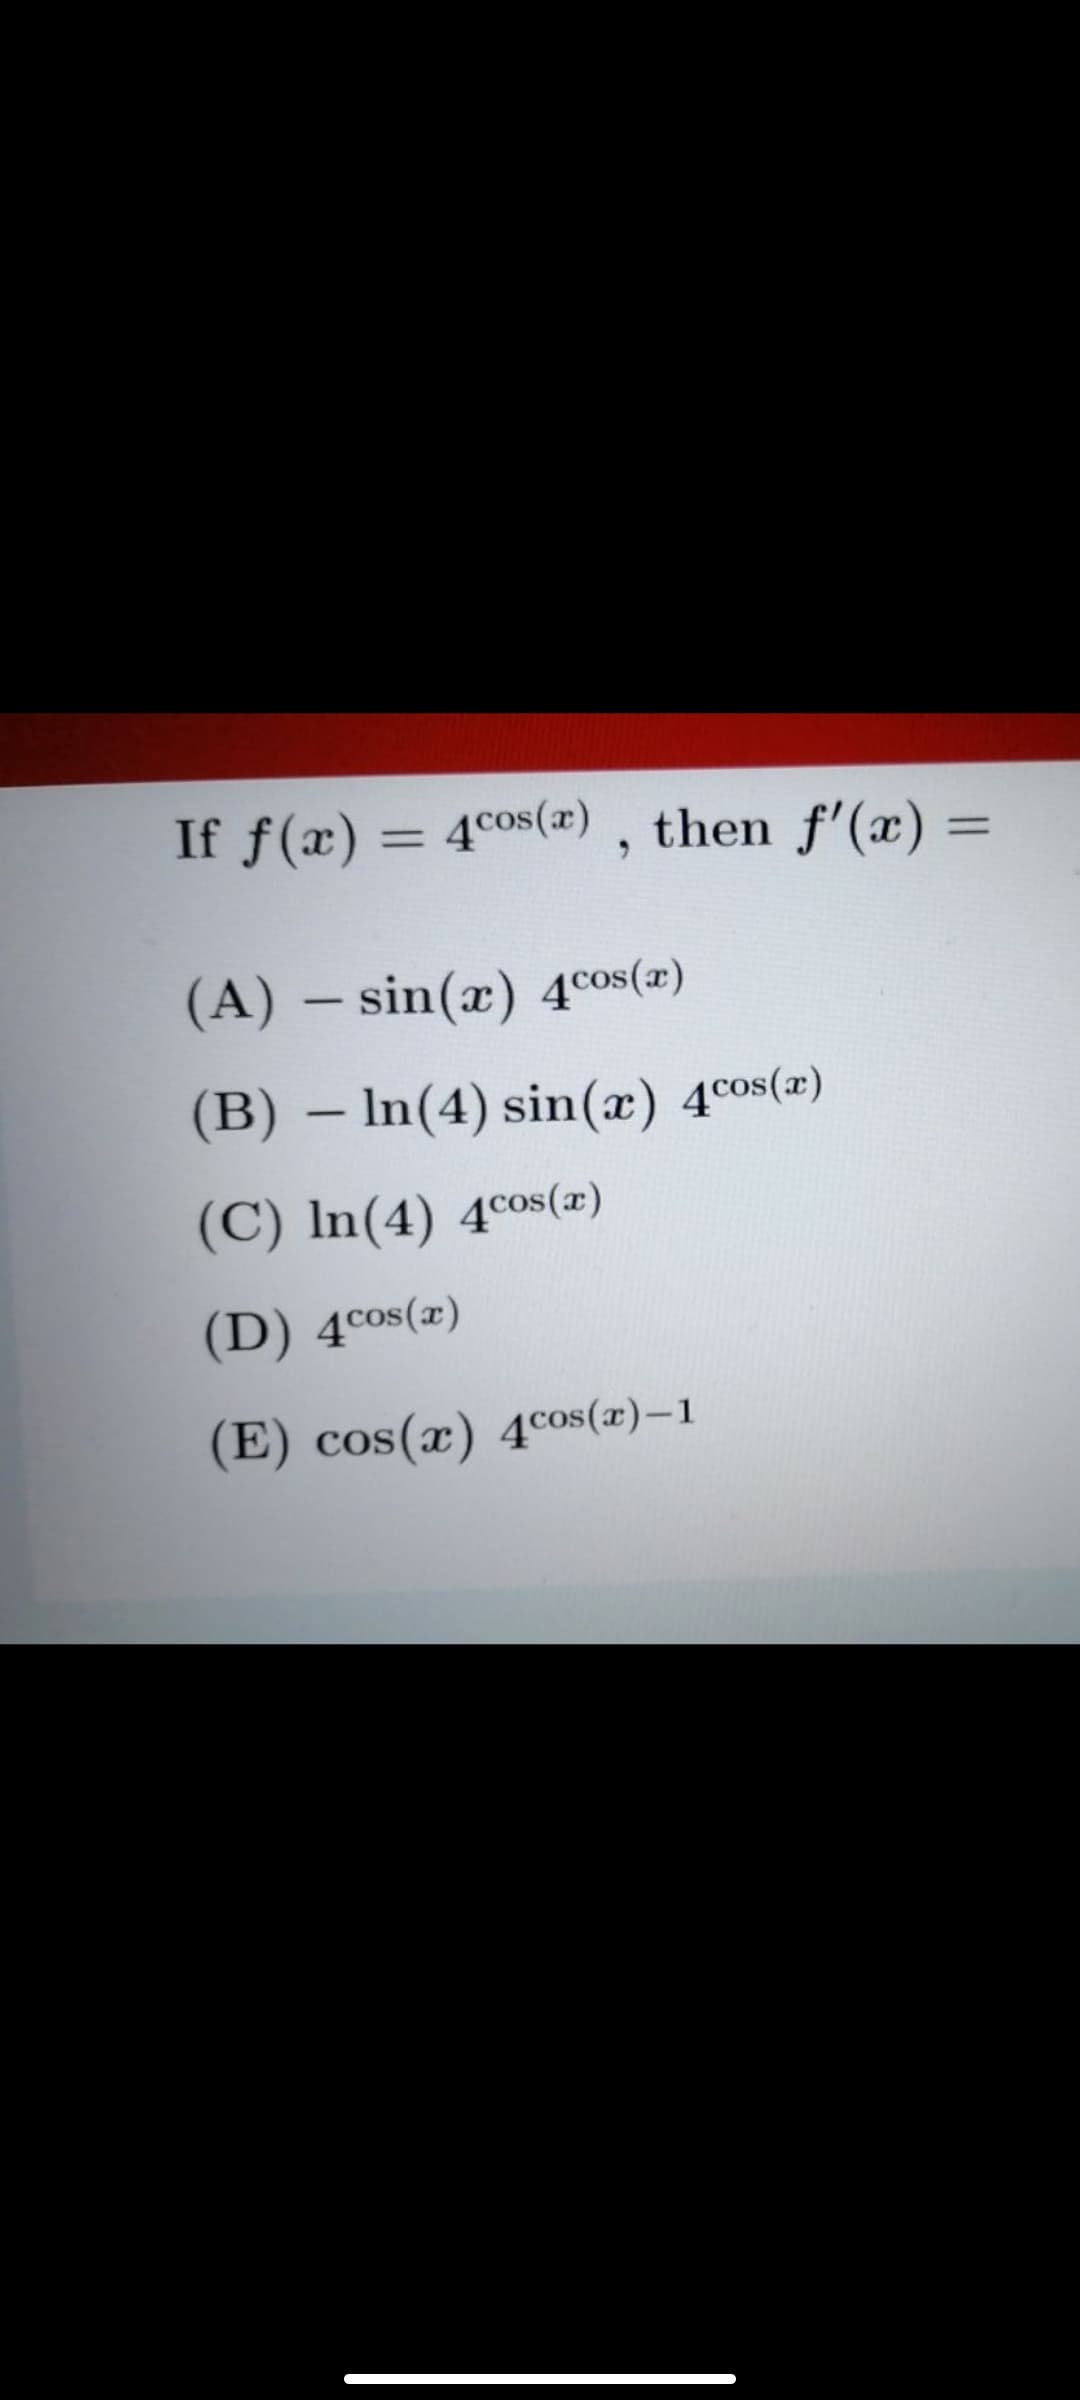 If f(x) = 4c0s(æ) , then f'(x) =
%3D
(A) – sin(x) 4cos(a)
(B) – In(4) sin(x) 4cos(a)
(C) In(4) 4cos(x)
(D) 4cos(x)
(E) cos(x) 4cos(x)-1
